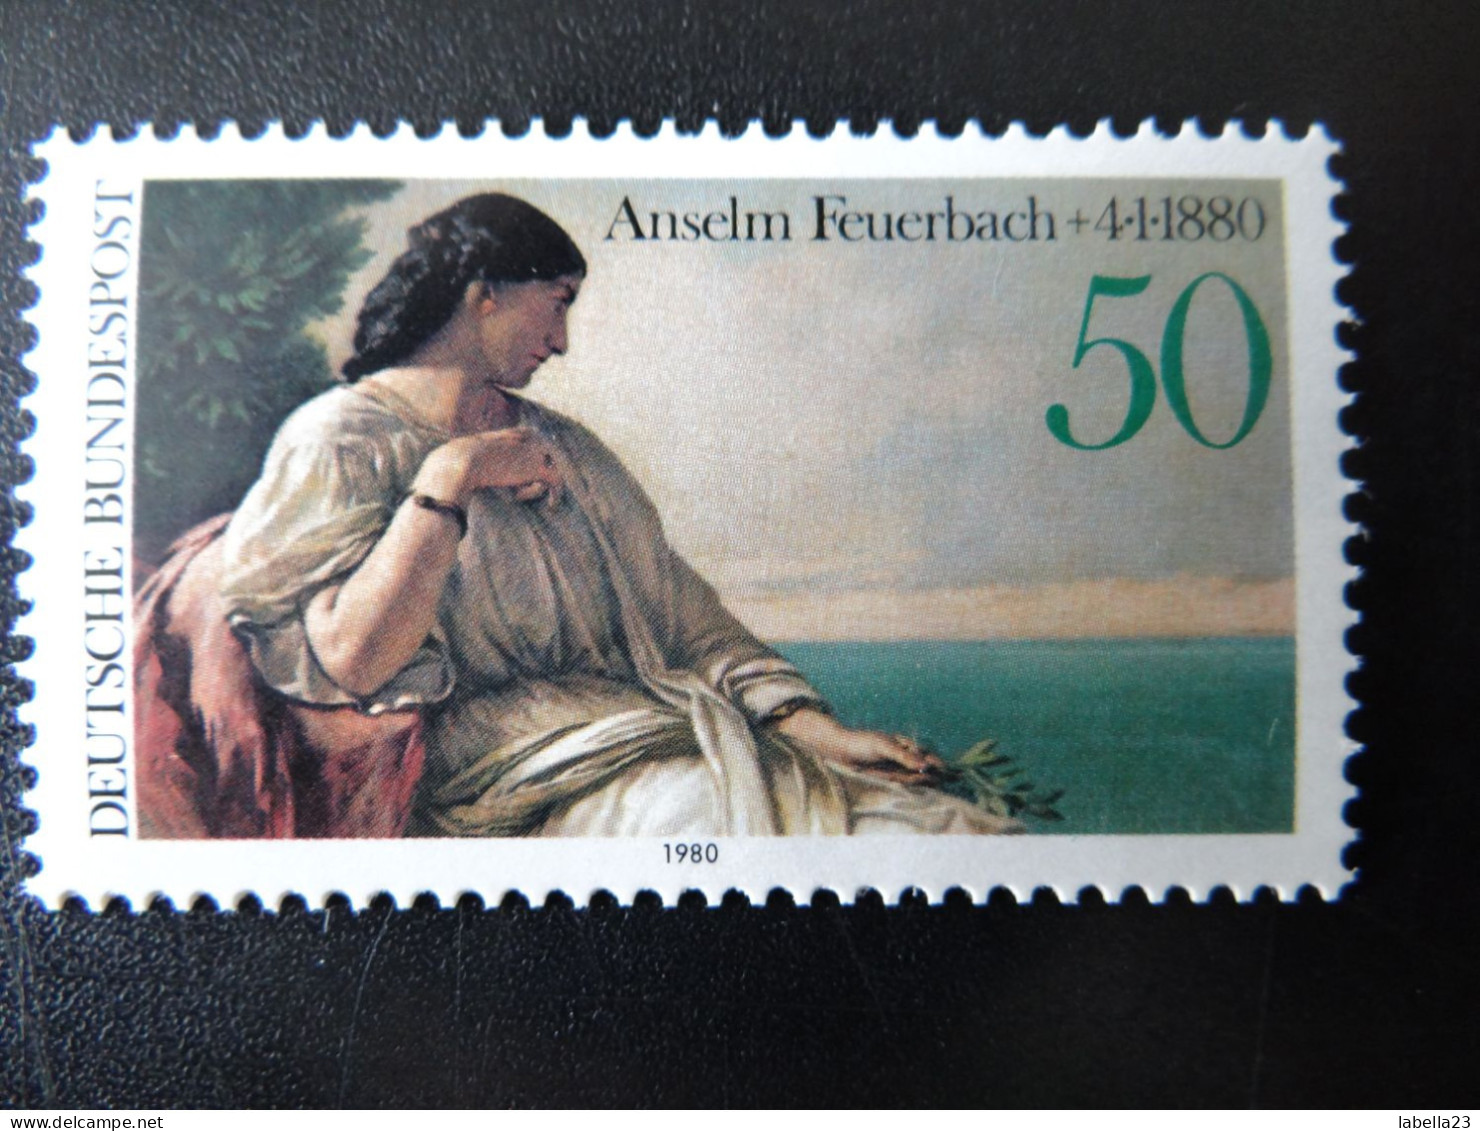 1980 Bund,  - Anselm Feuerbach - Iphigenie - Postfrisch - MiNr. 1033 - Impresionismo